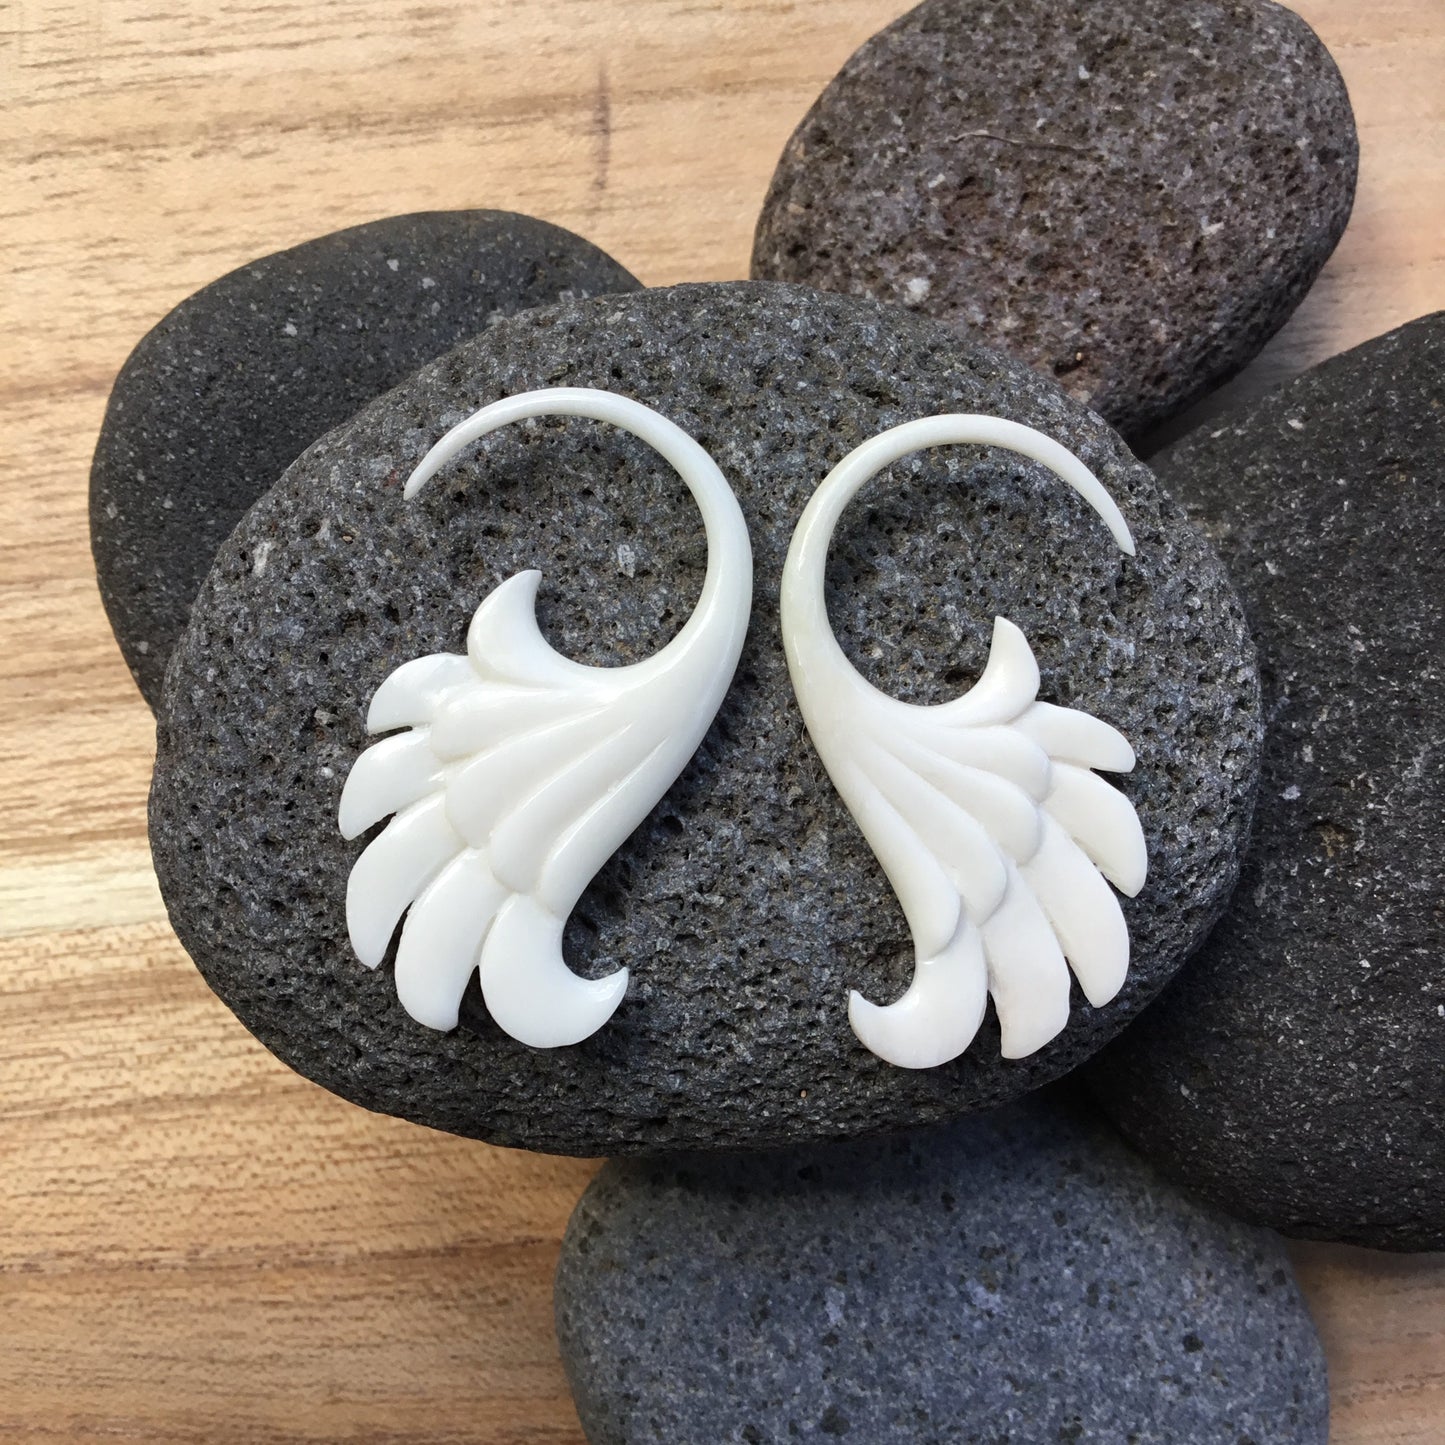 Wings. Bone 12g gauge earrings.